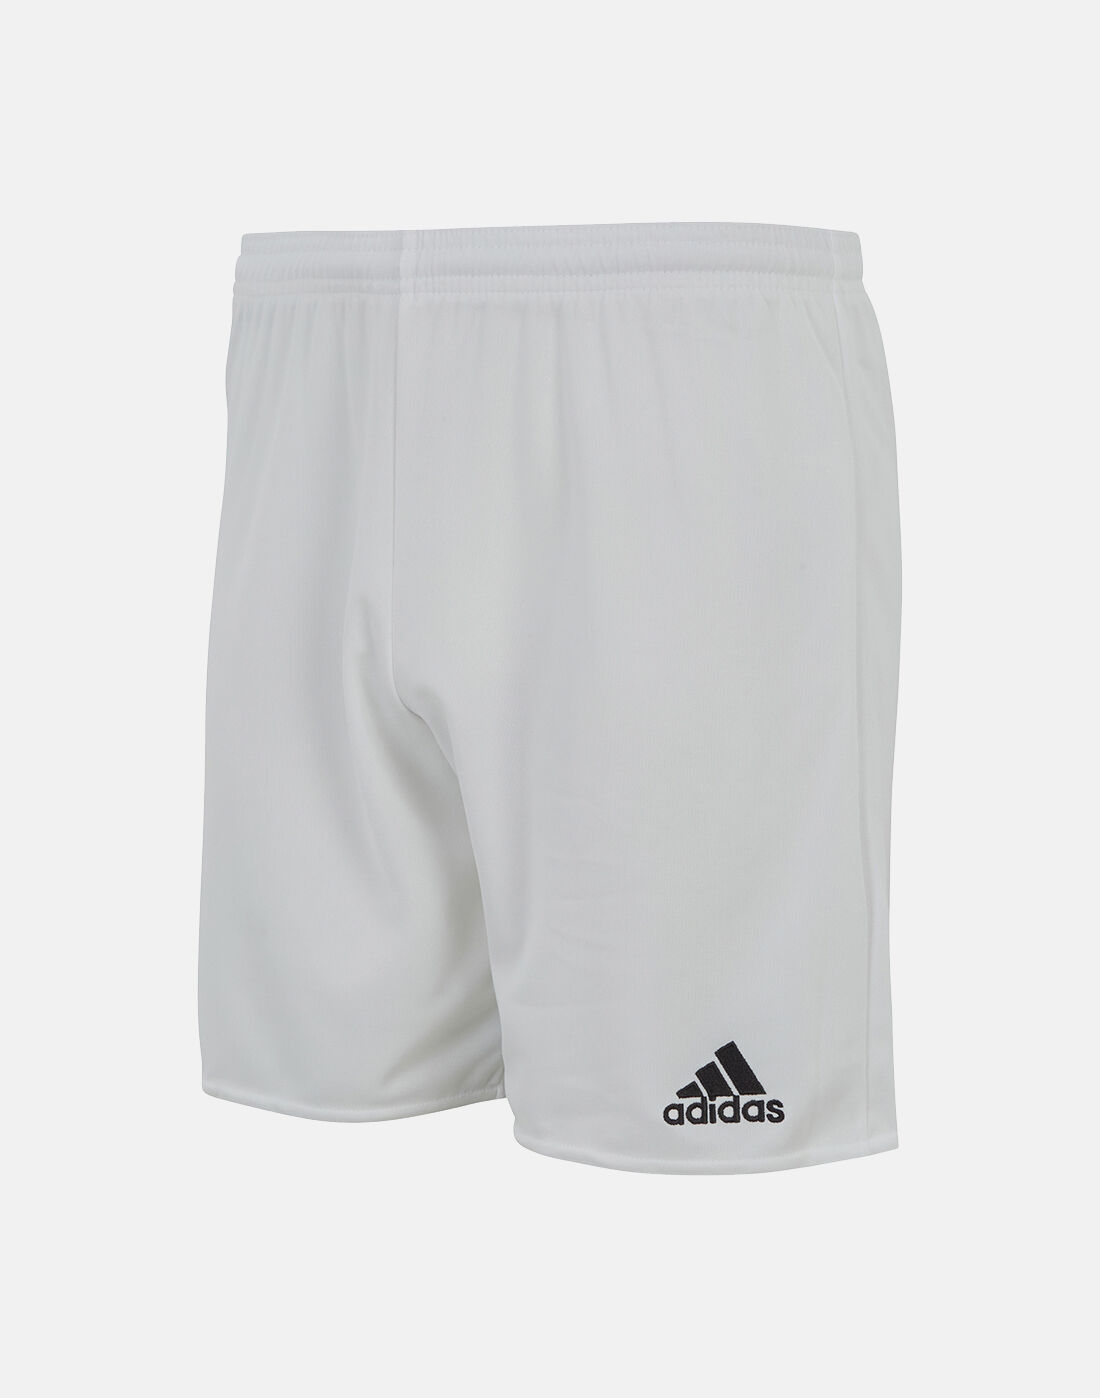 adidas football shorts mens